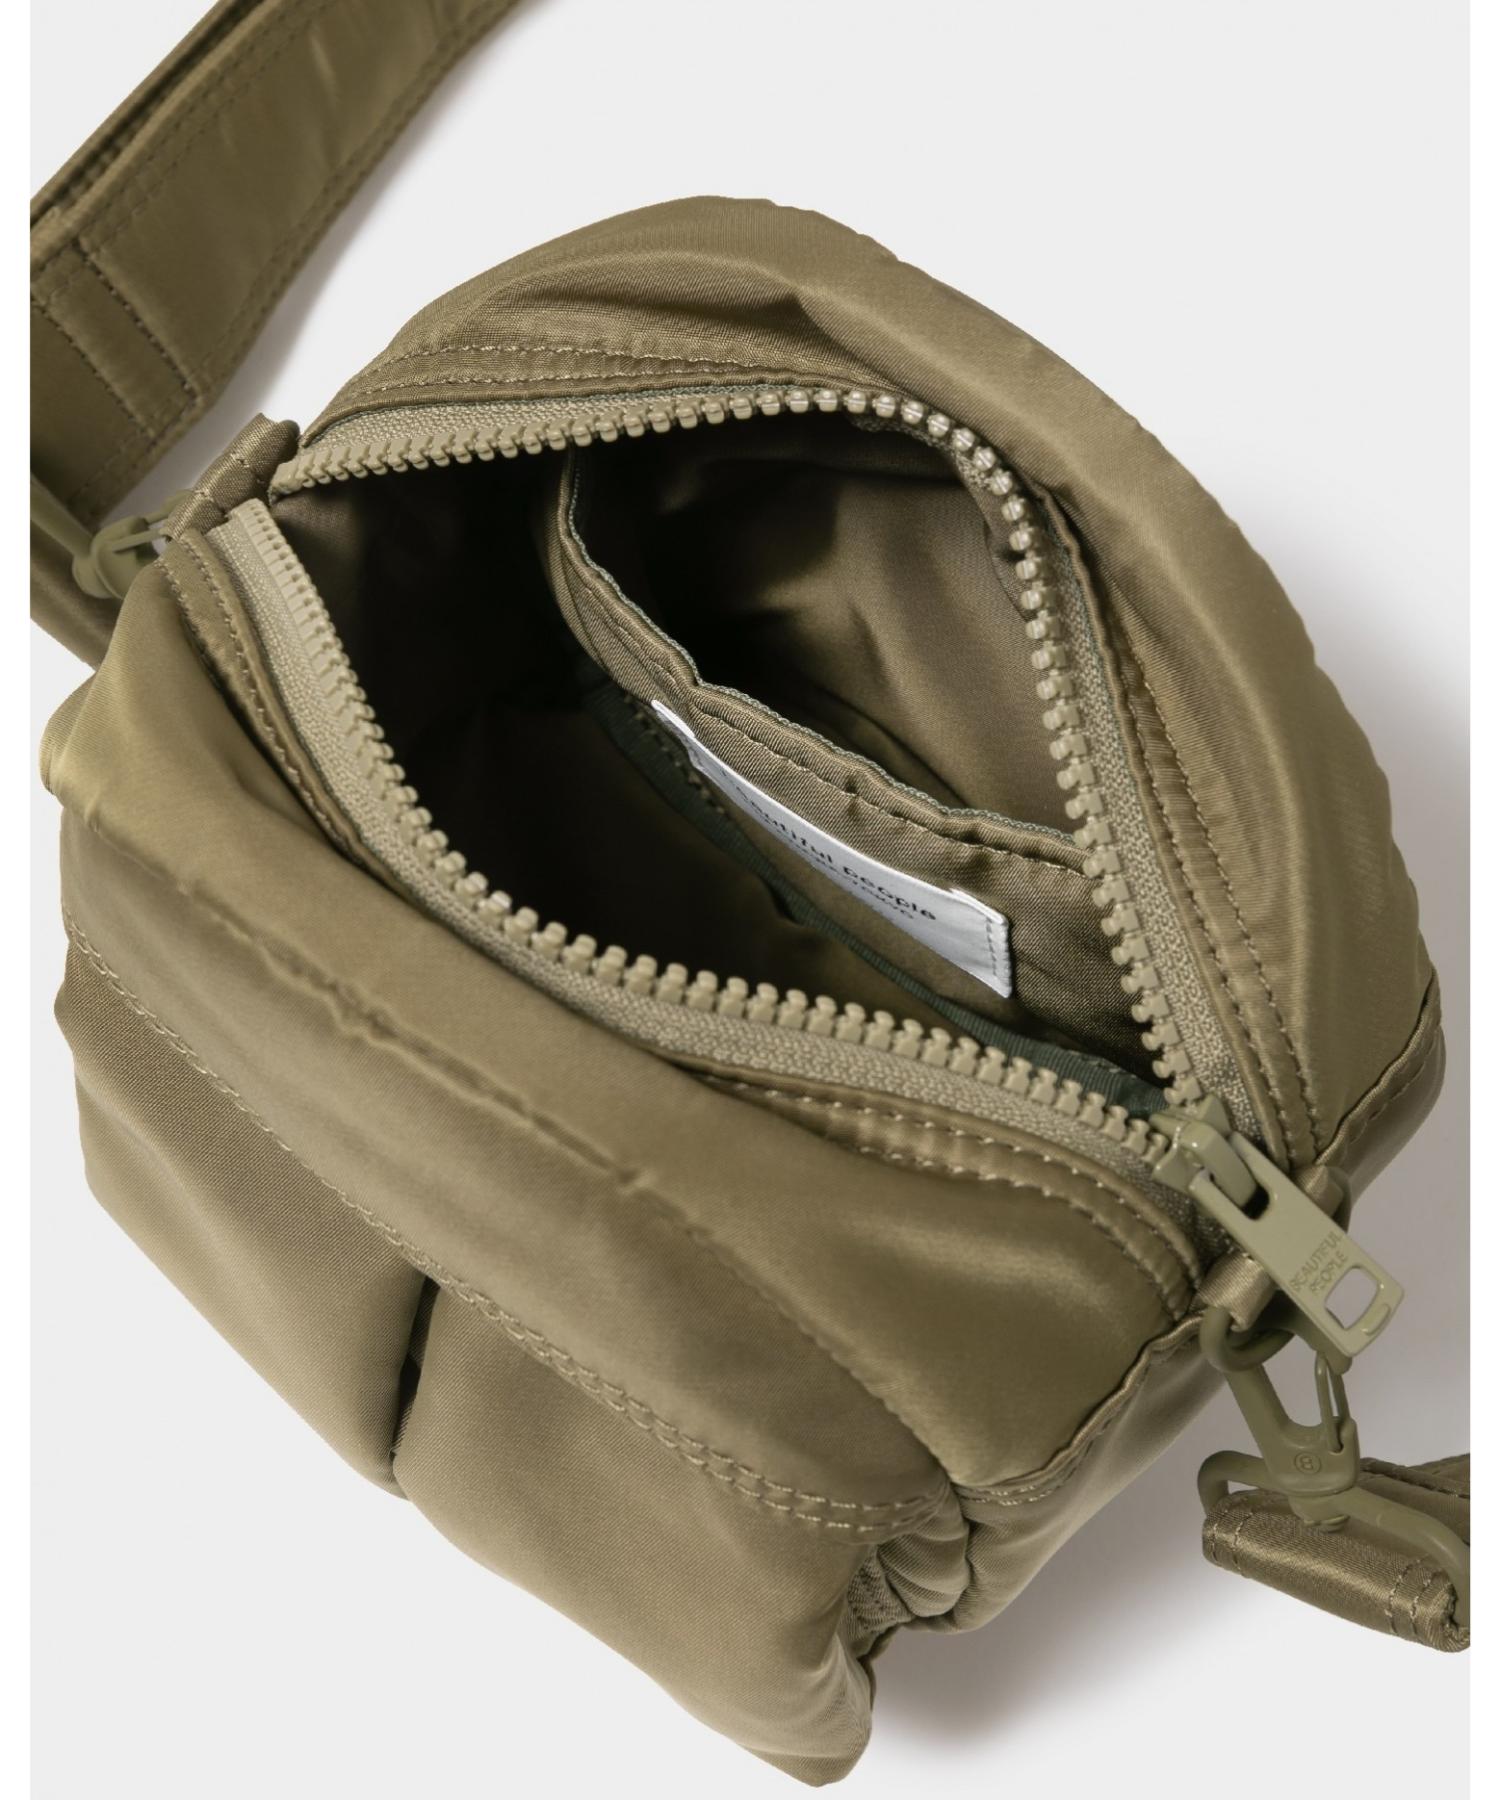 POTRxbp shoulder bag in nylon twill